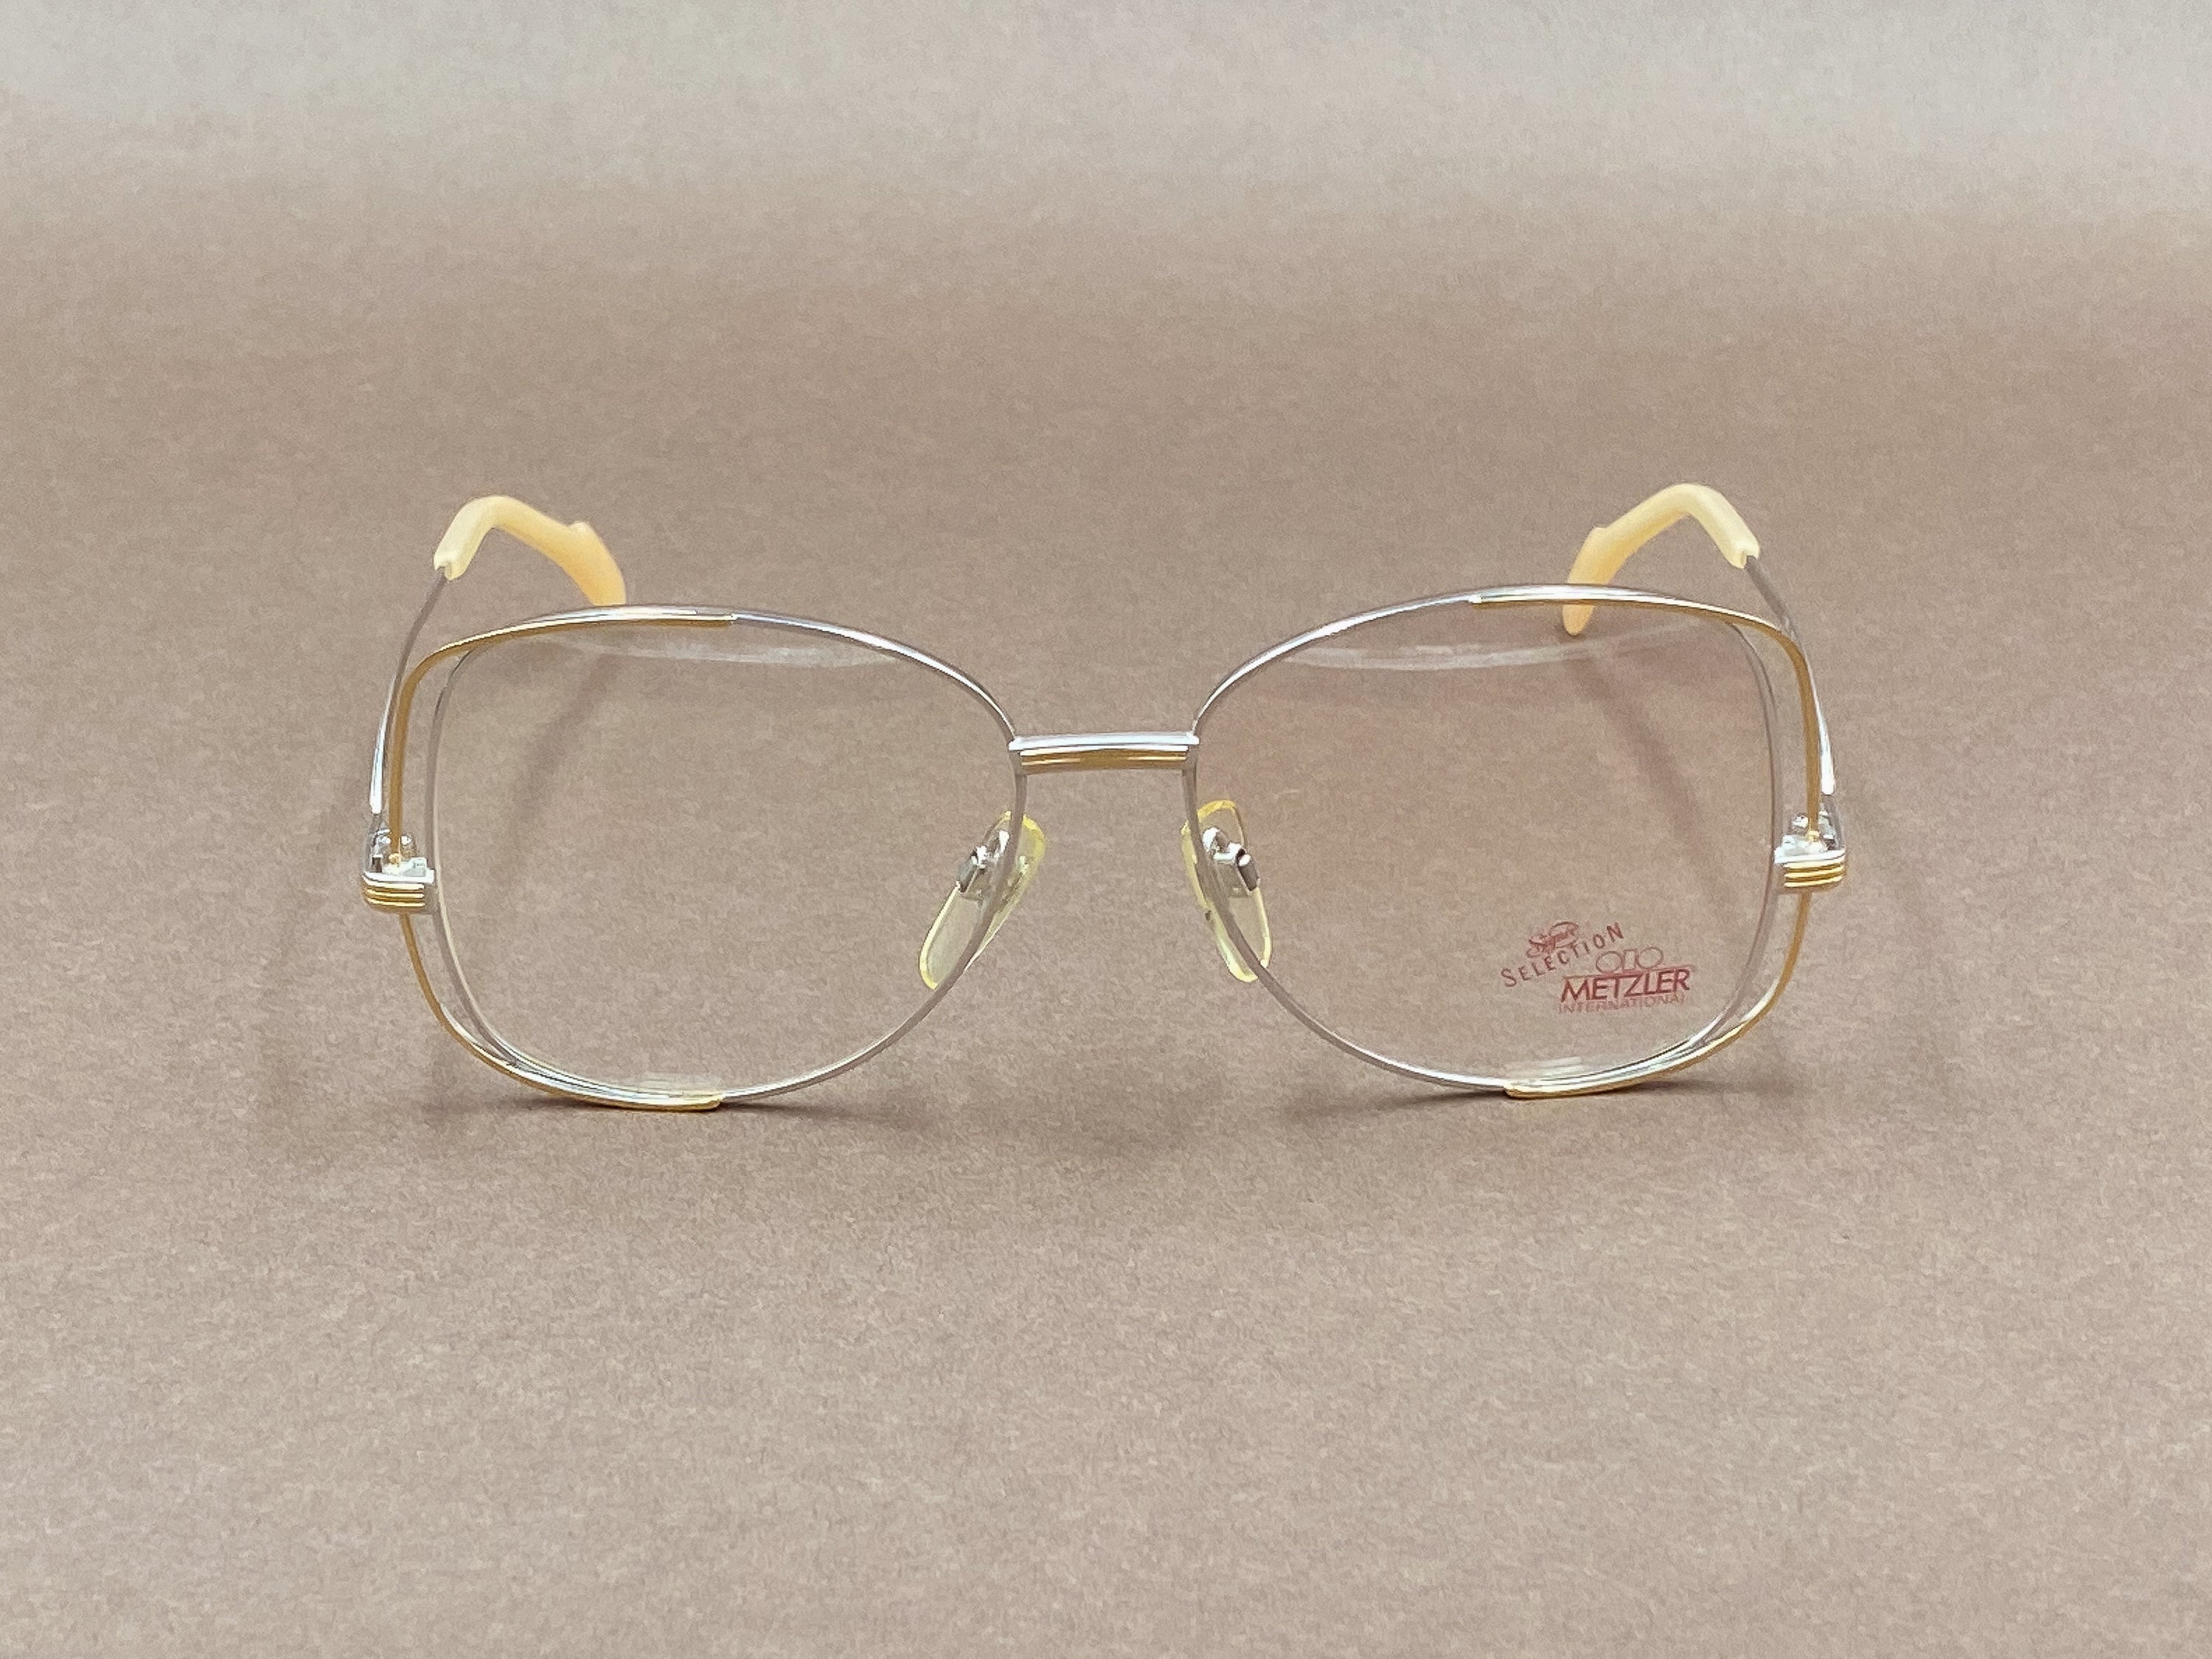 Metzler 0723 eyeglasses